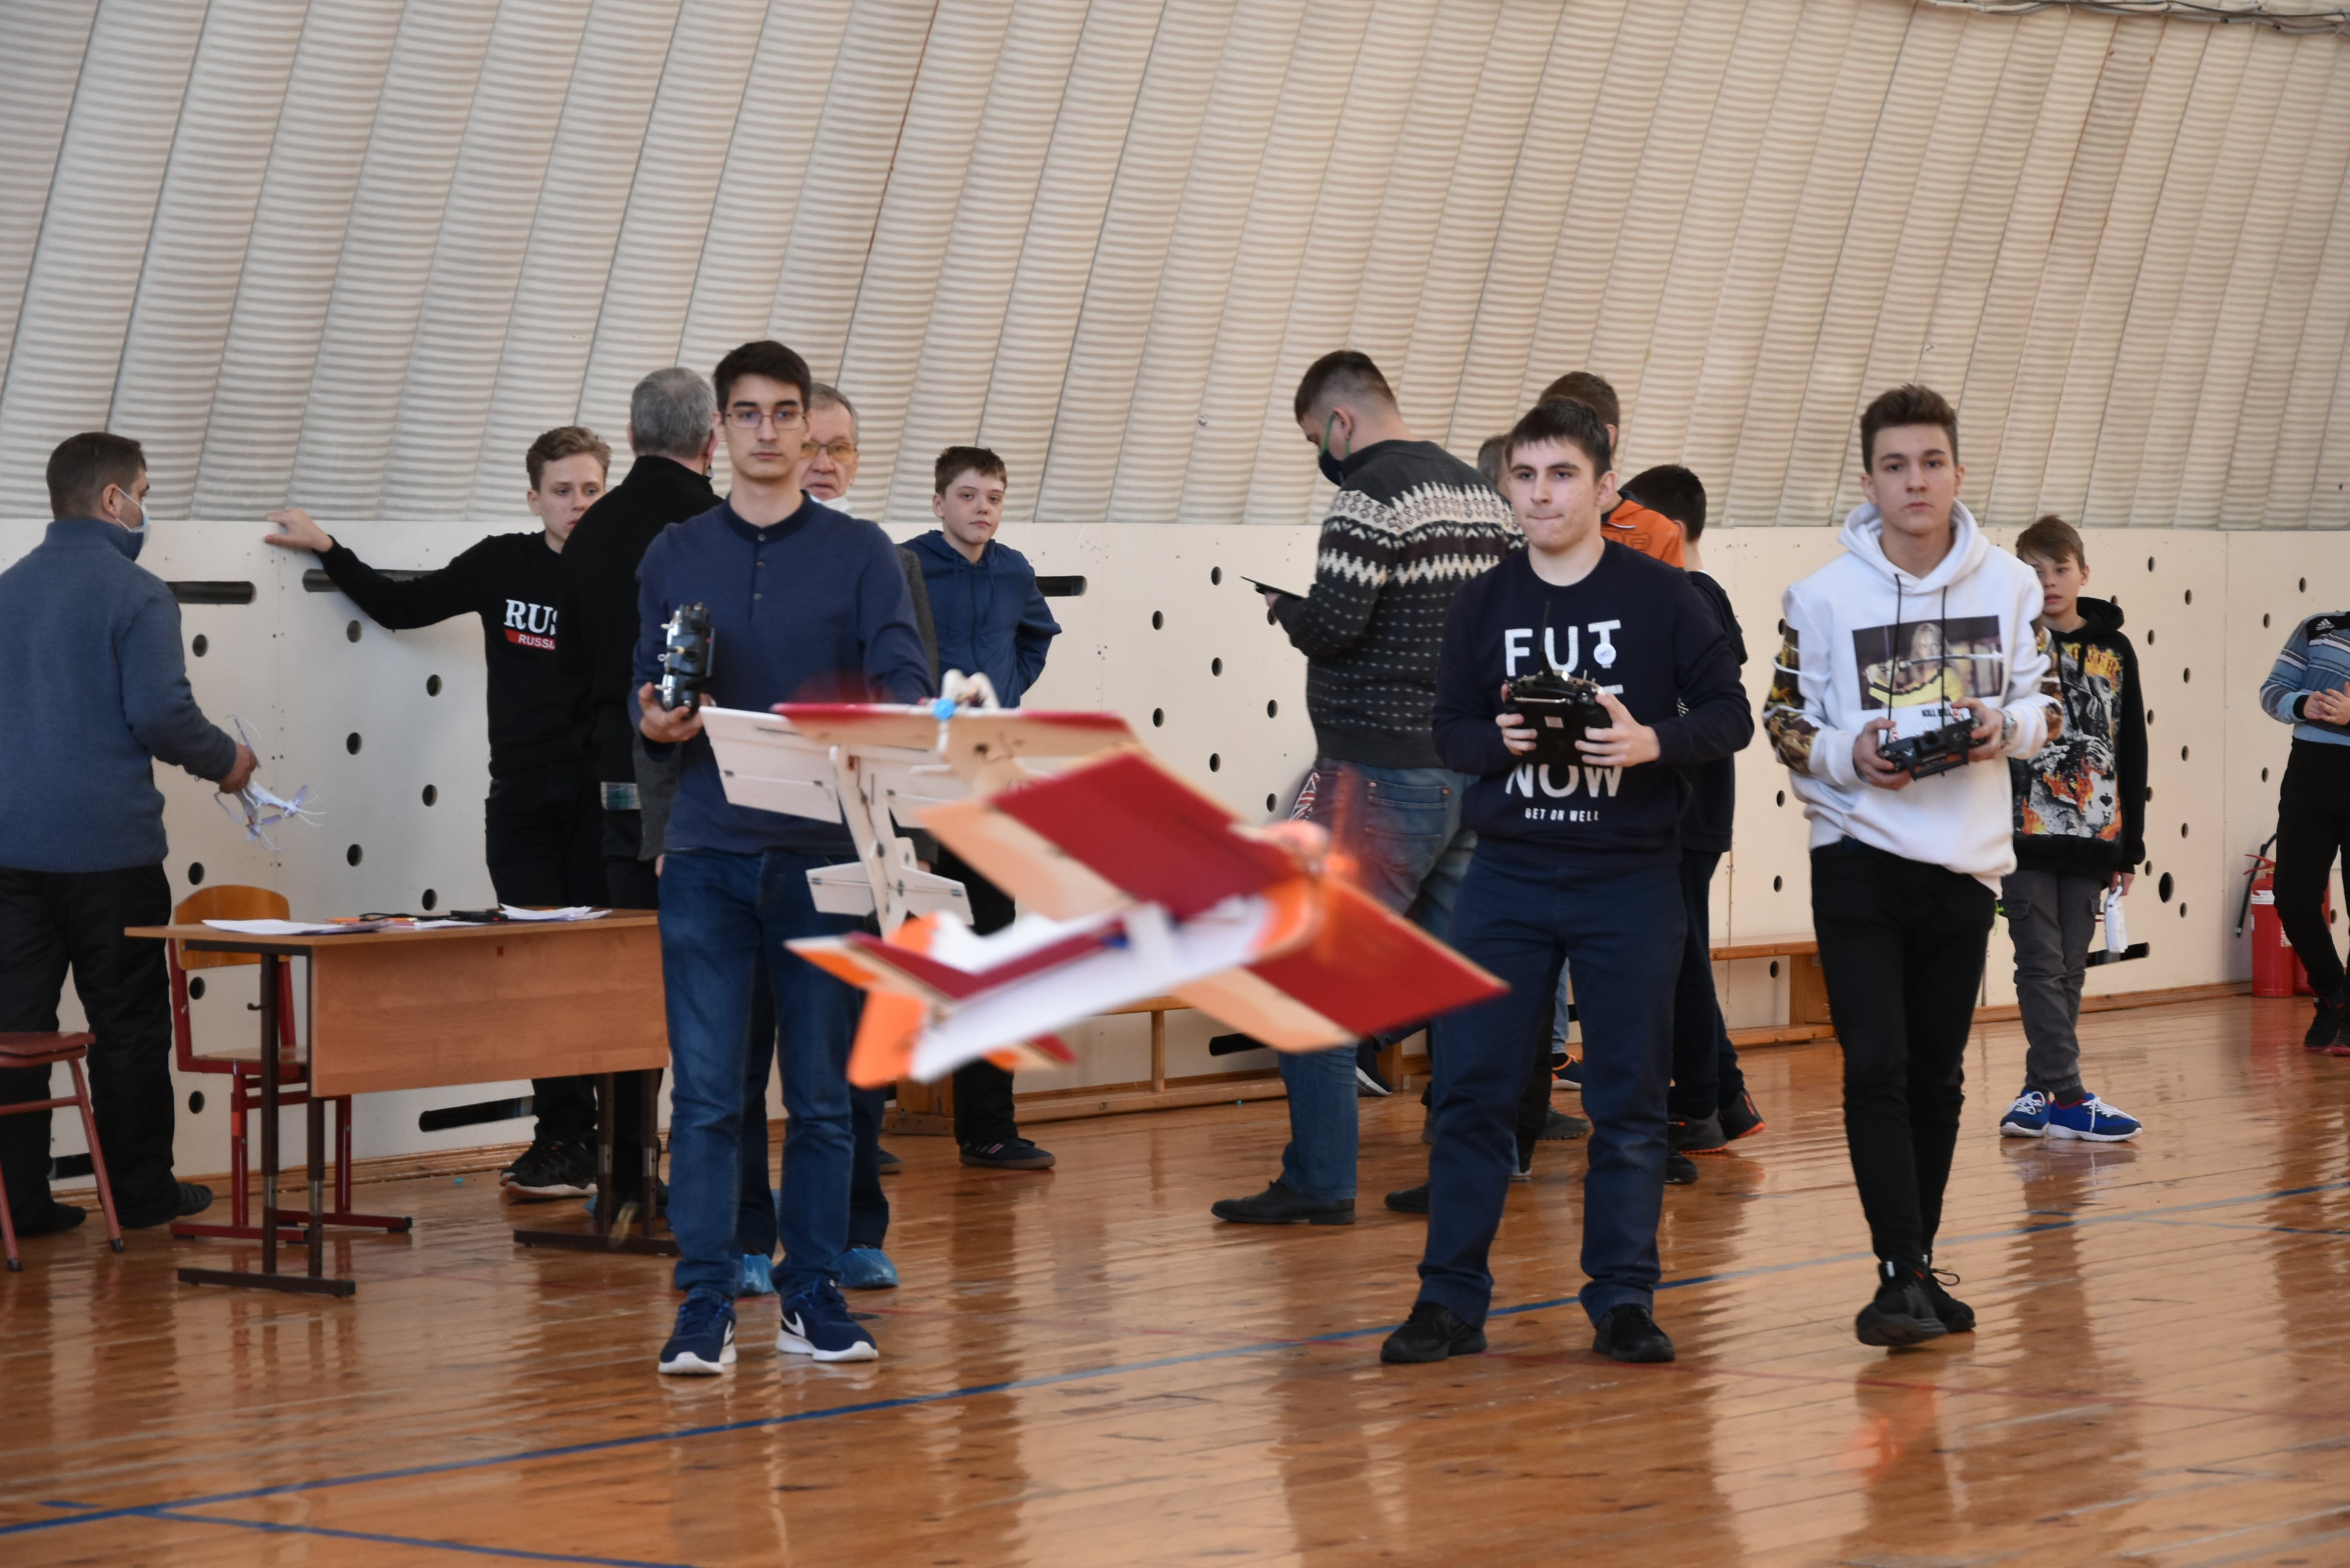 Областные соревнования по авиационным моделям для закрытых помещений прошли в Кузбассе